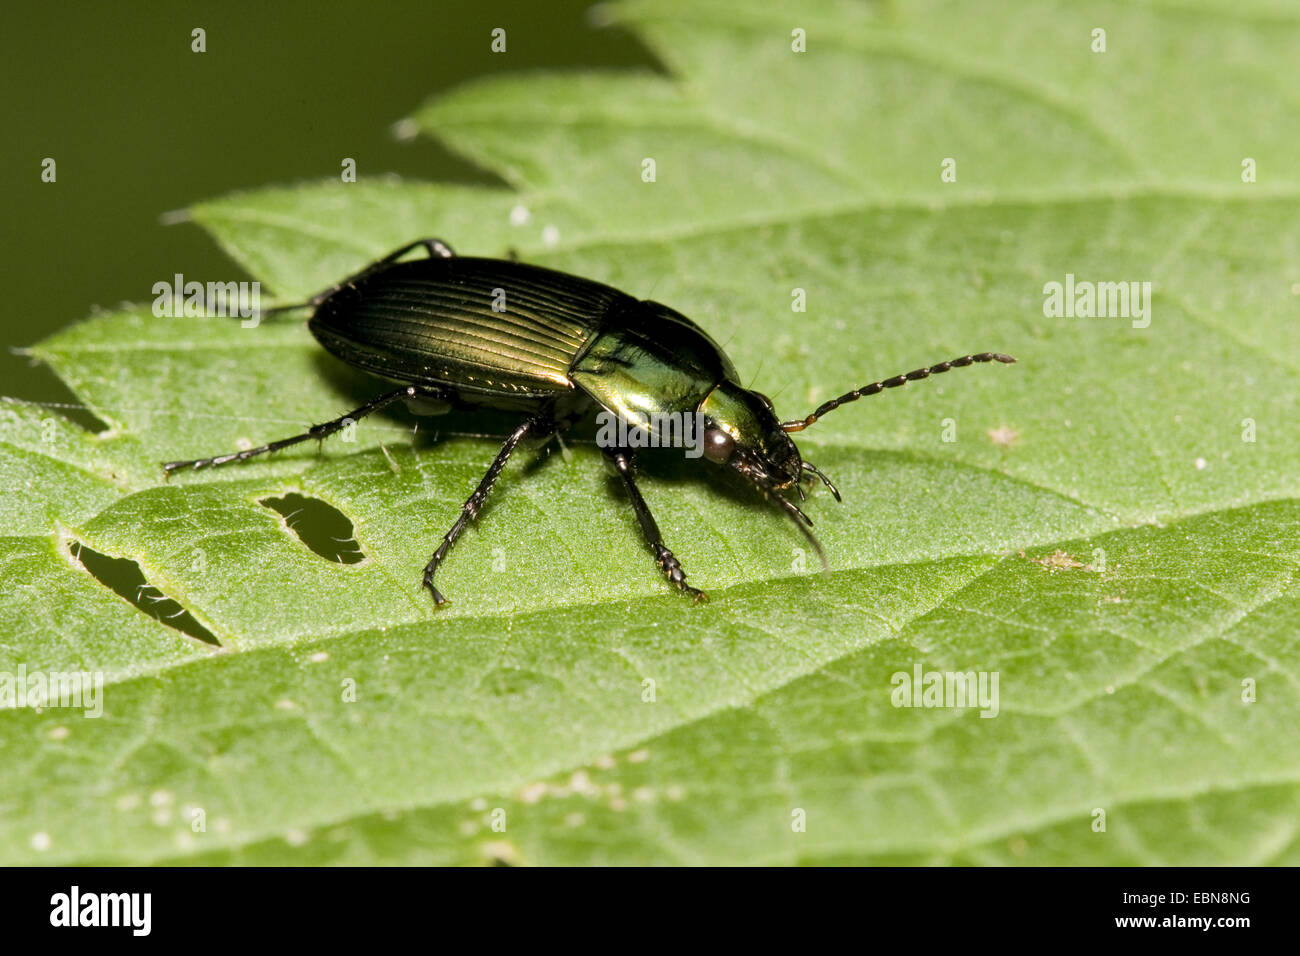 Rain beetle, ground beetle (Pterostichus cupreus, Poecilus cupreus), on a leaf, Germany Stock Photo